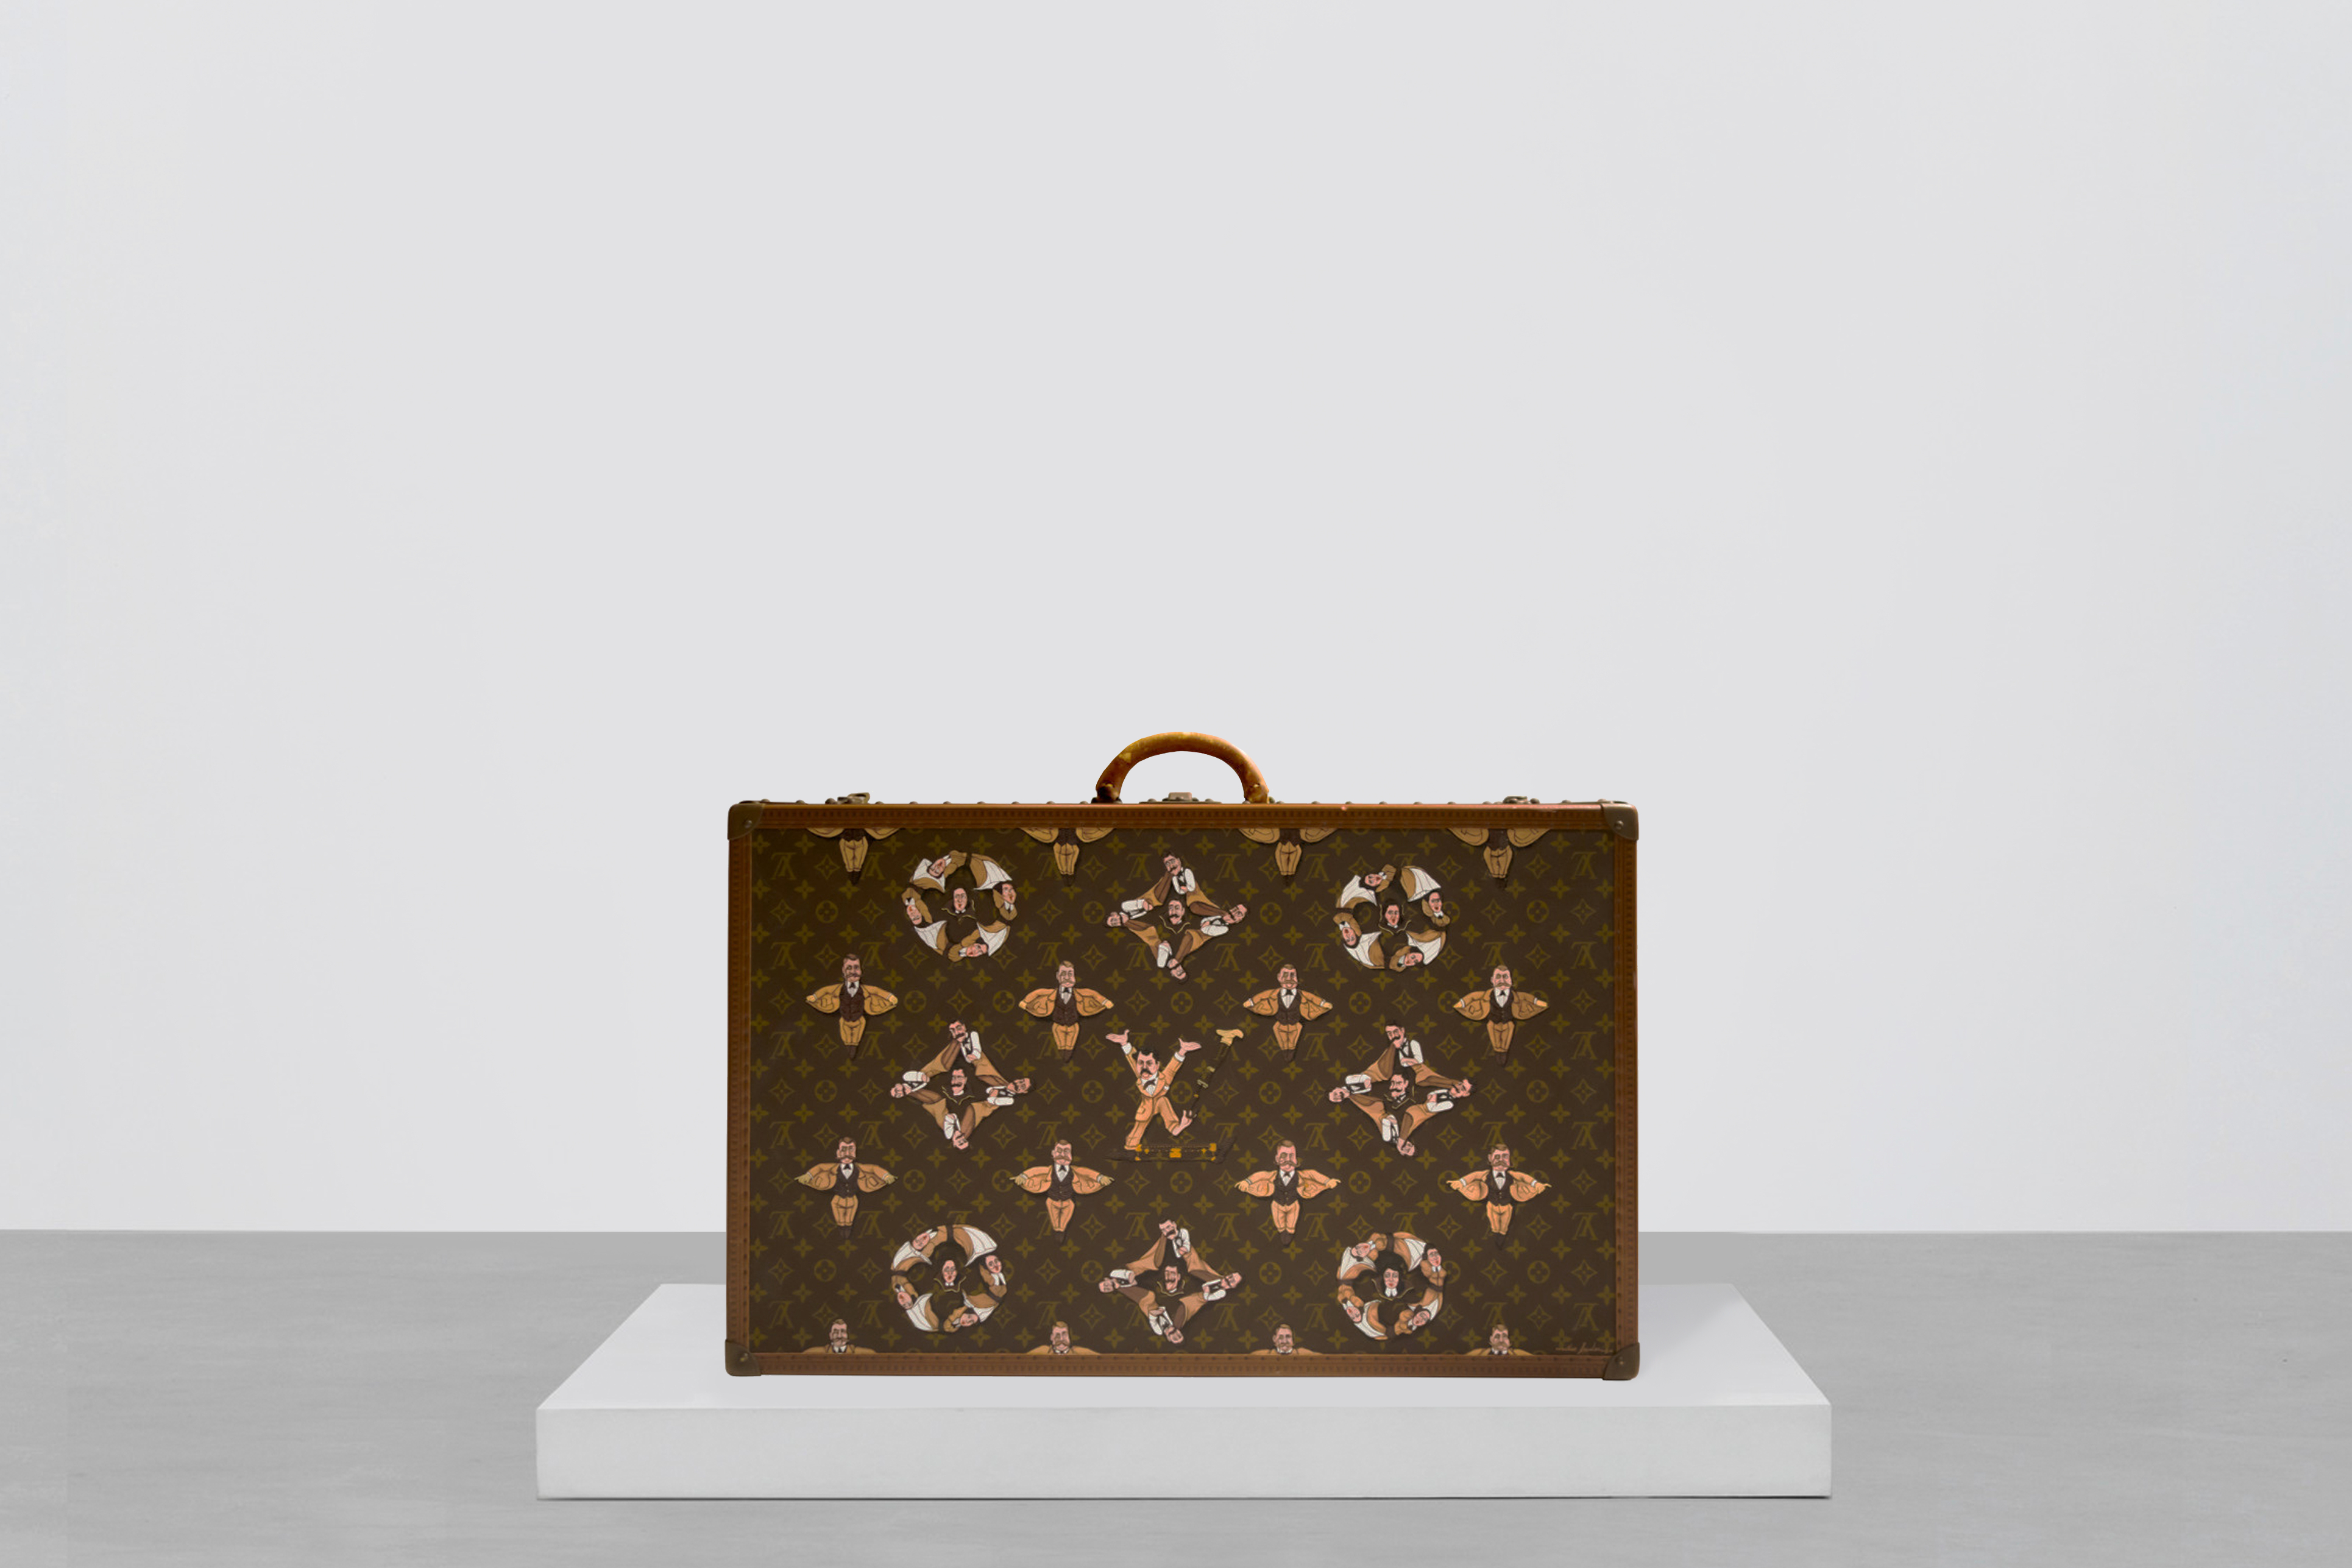 Mike Frederiqo 在纽约时装周展出特制款 Louis Vuitton 皮箱，他认为融入创办人本身的图像、而非抽象字母，显然是更能代表品牌的象征。